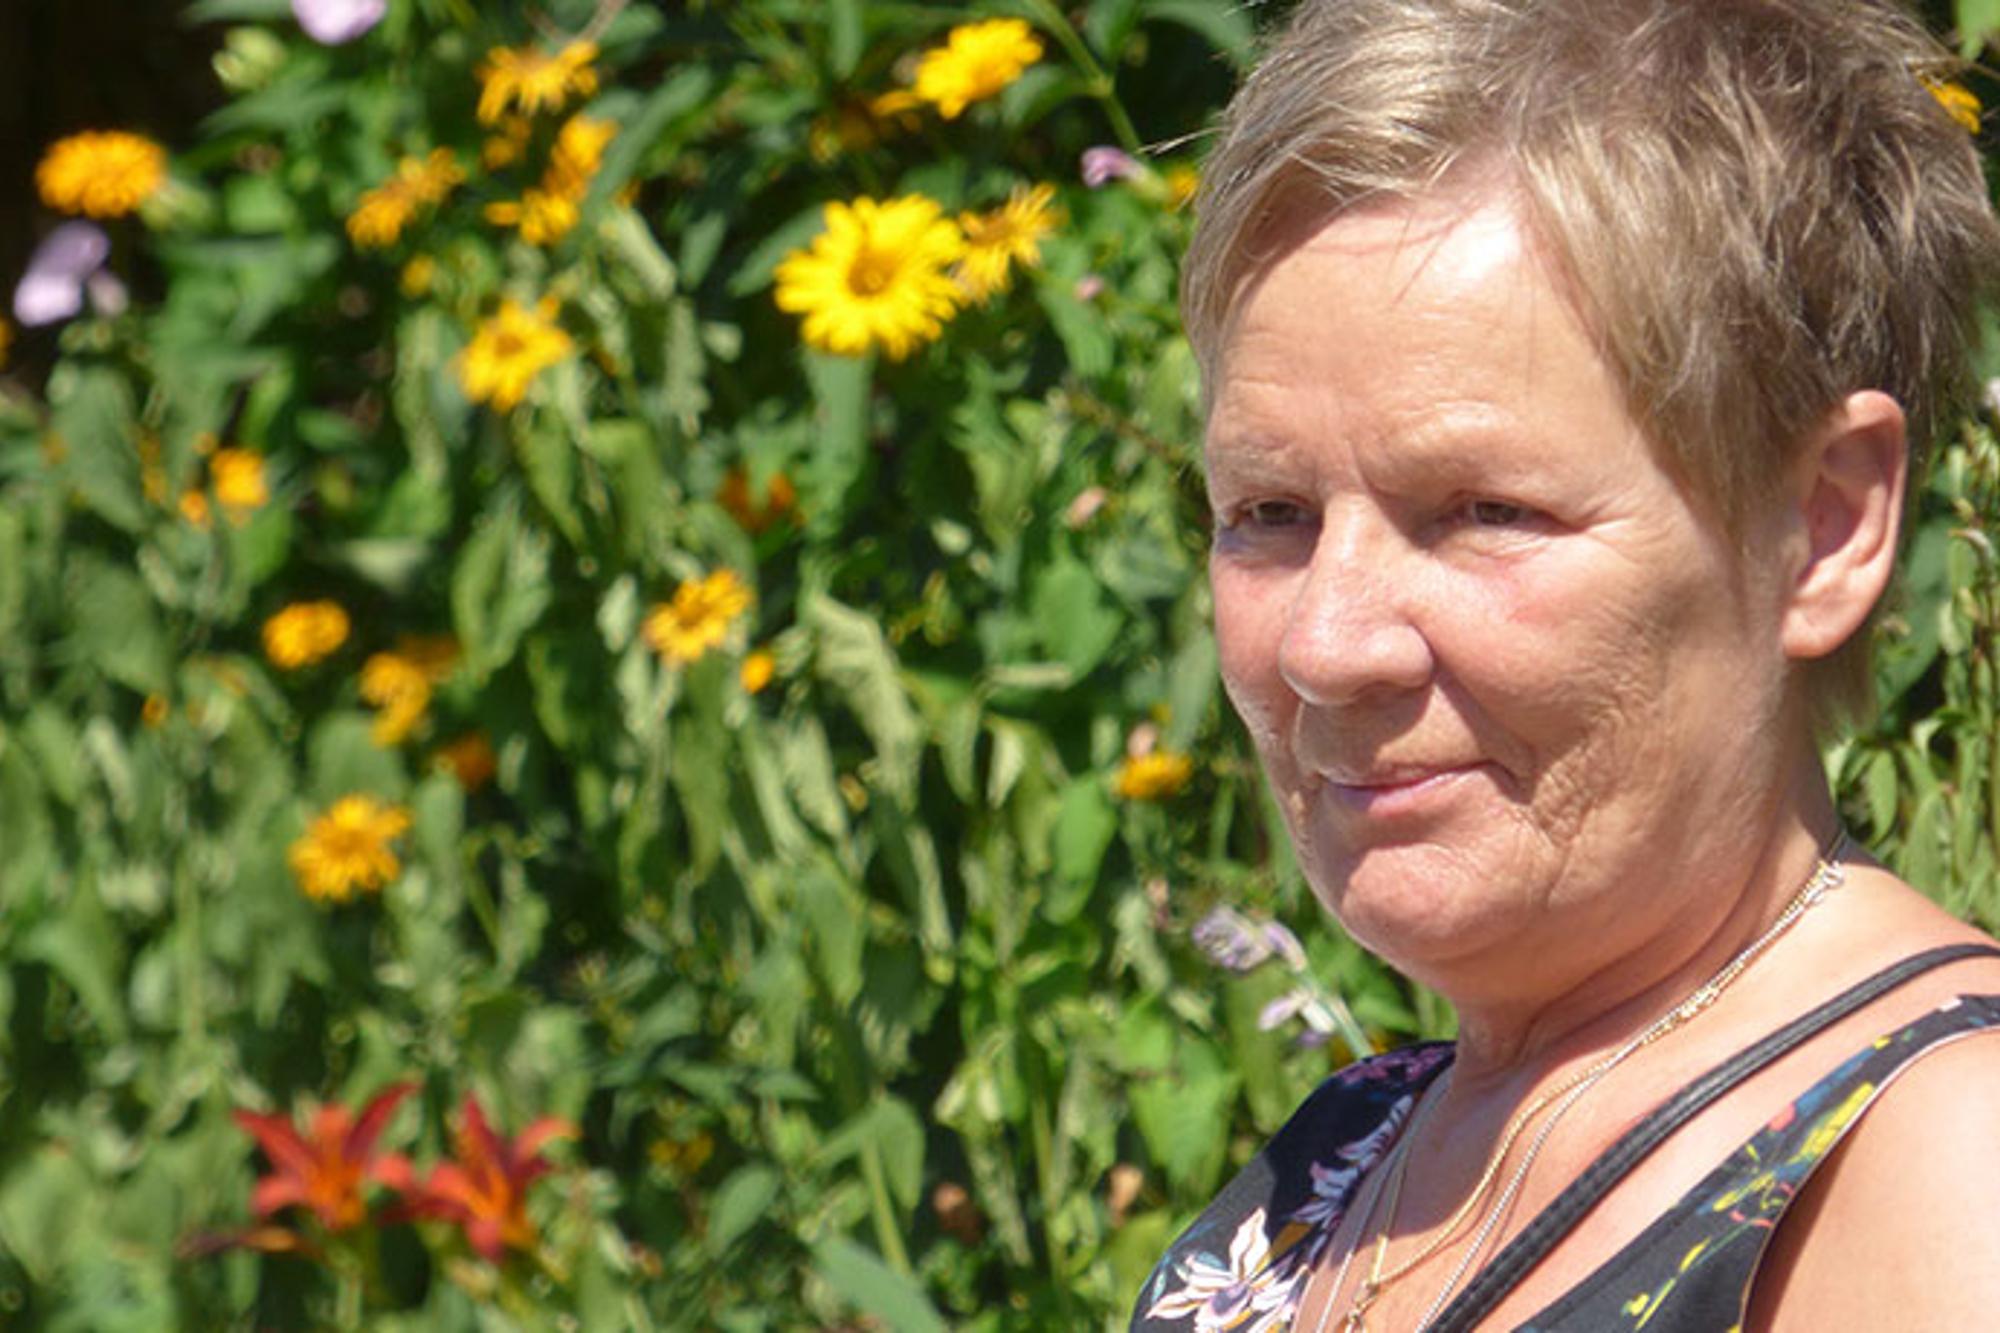 Porträttbild av Ankie Dahlstedt. Hon tittar till vänster om kameran, och i bakgrunden syns blommor.